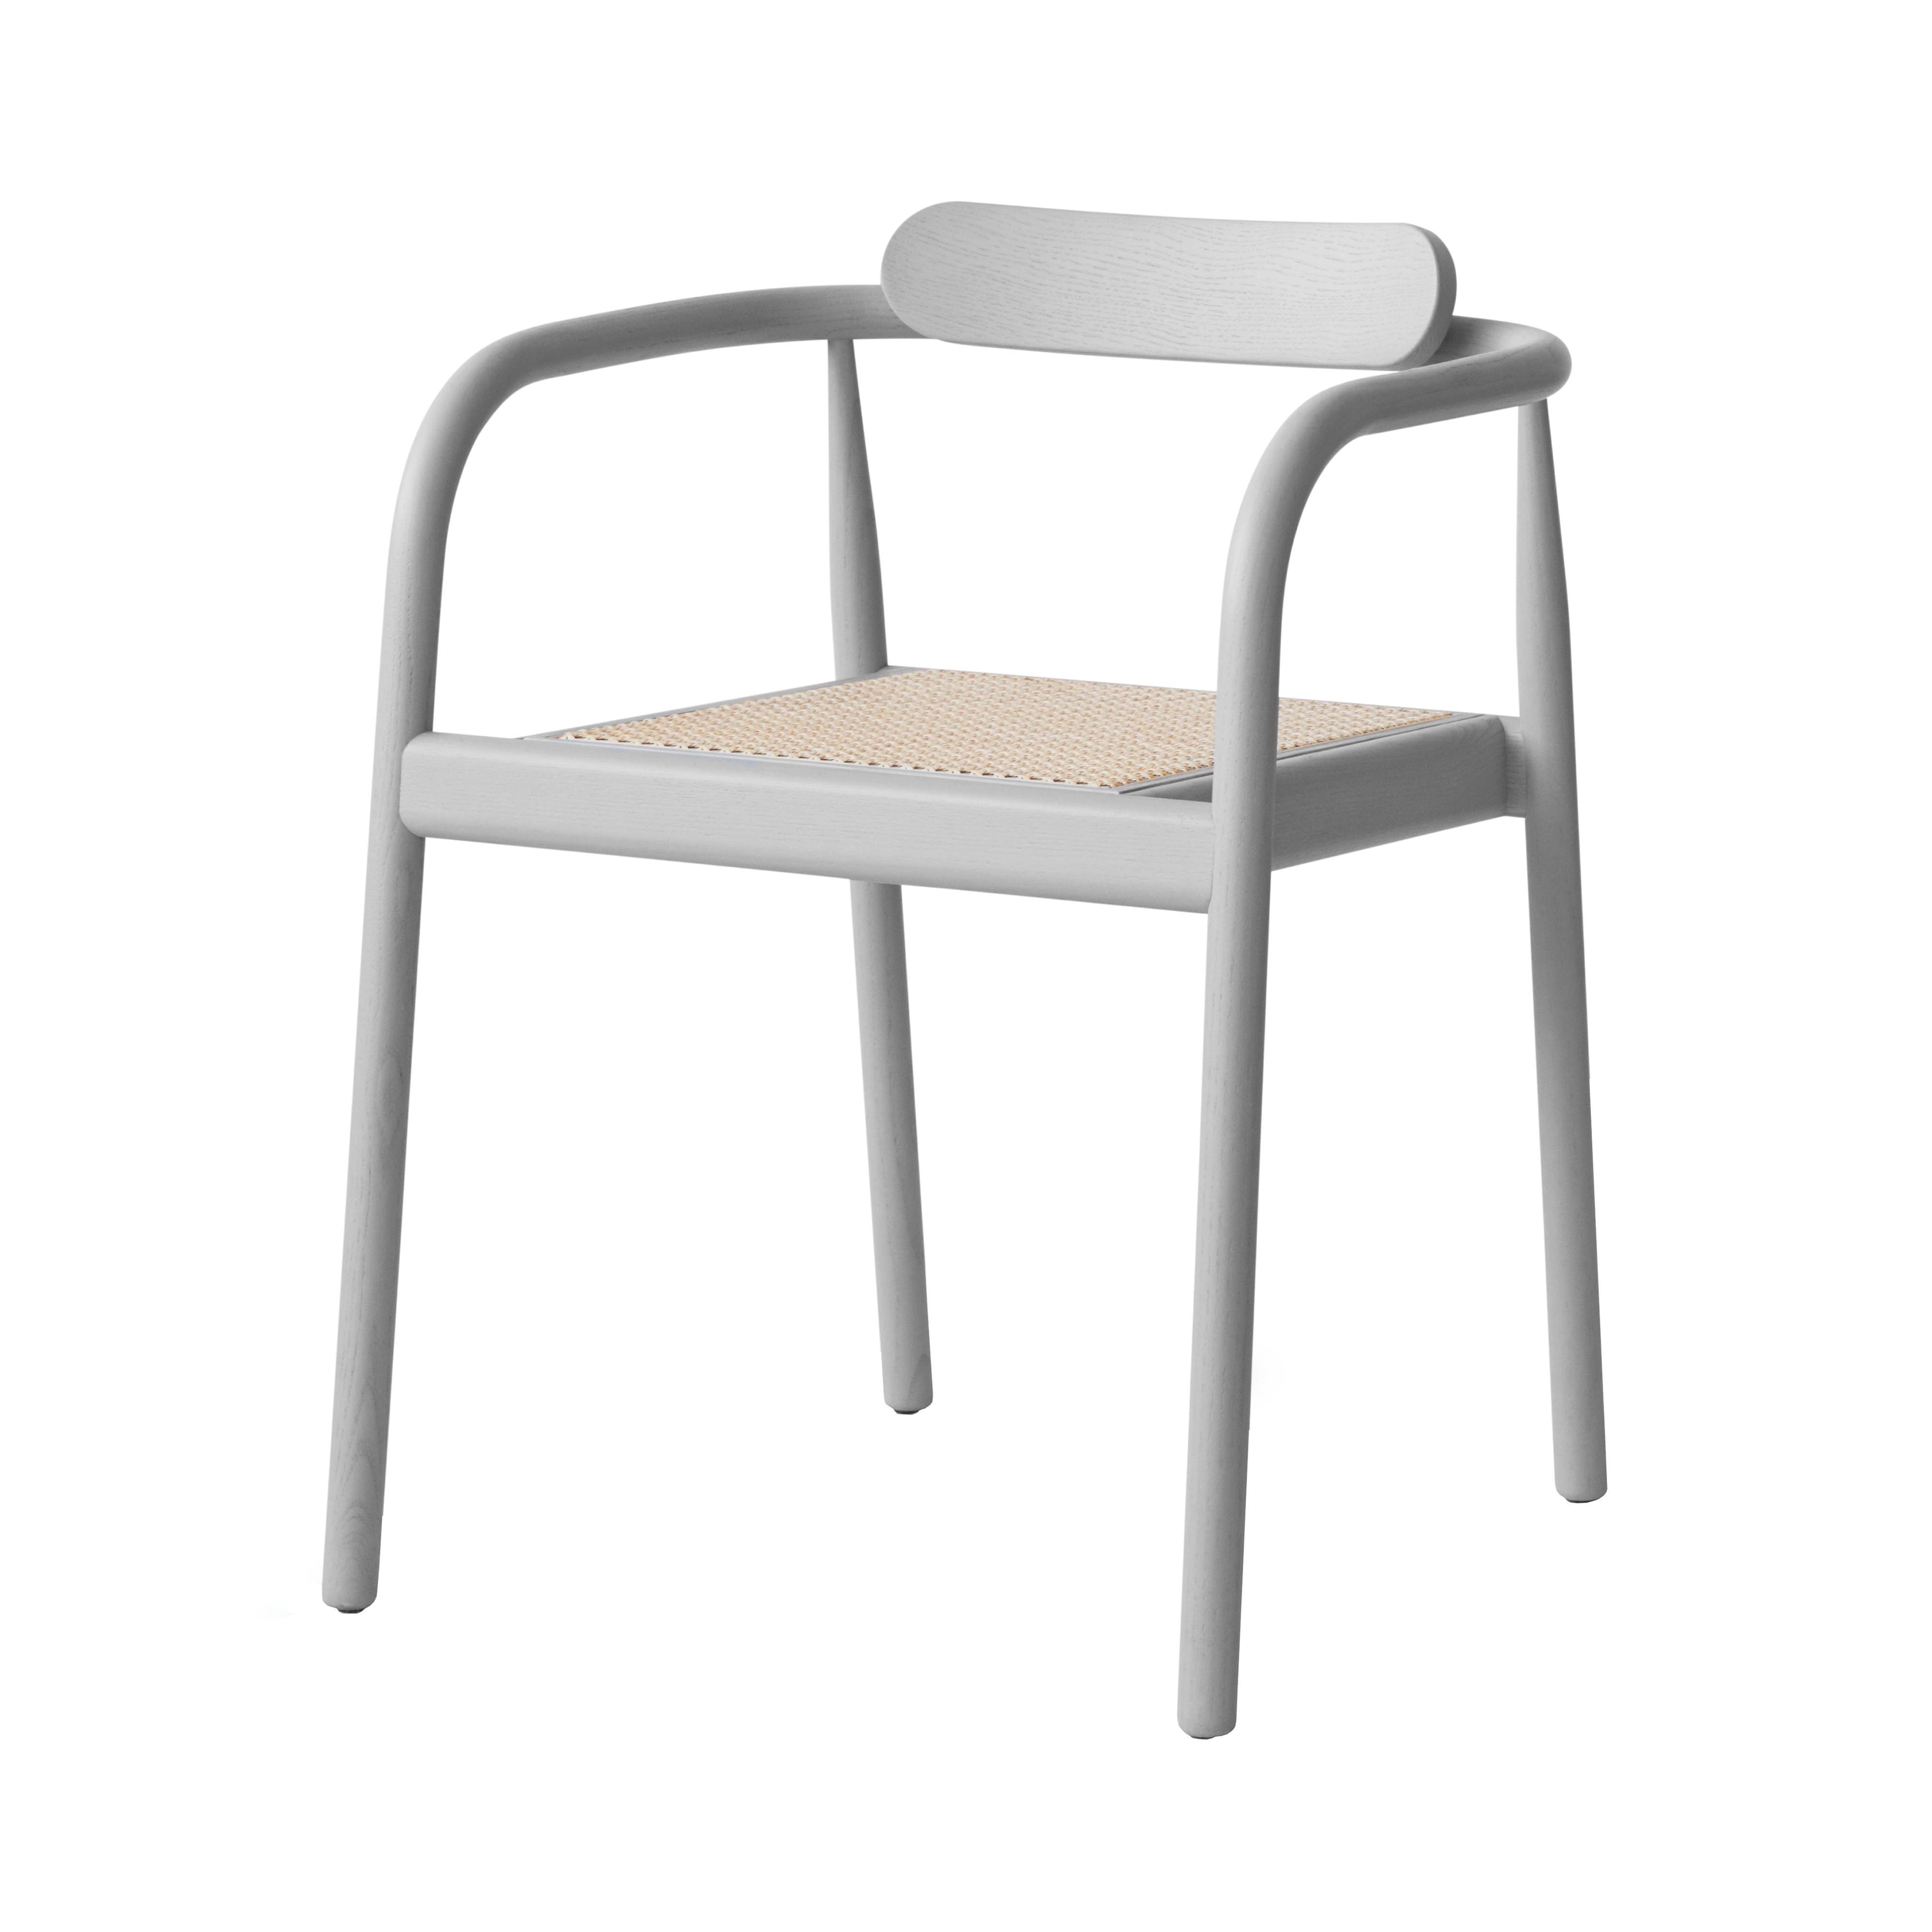 Ahm Chair: Ash Grey